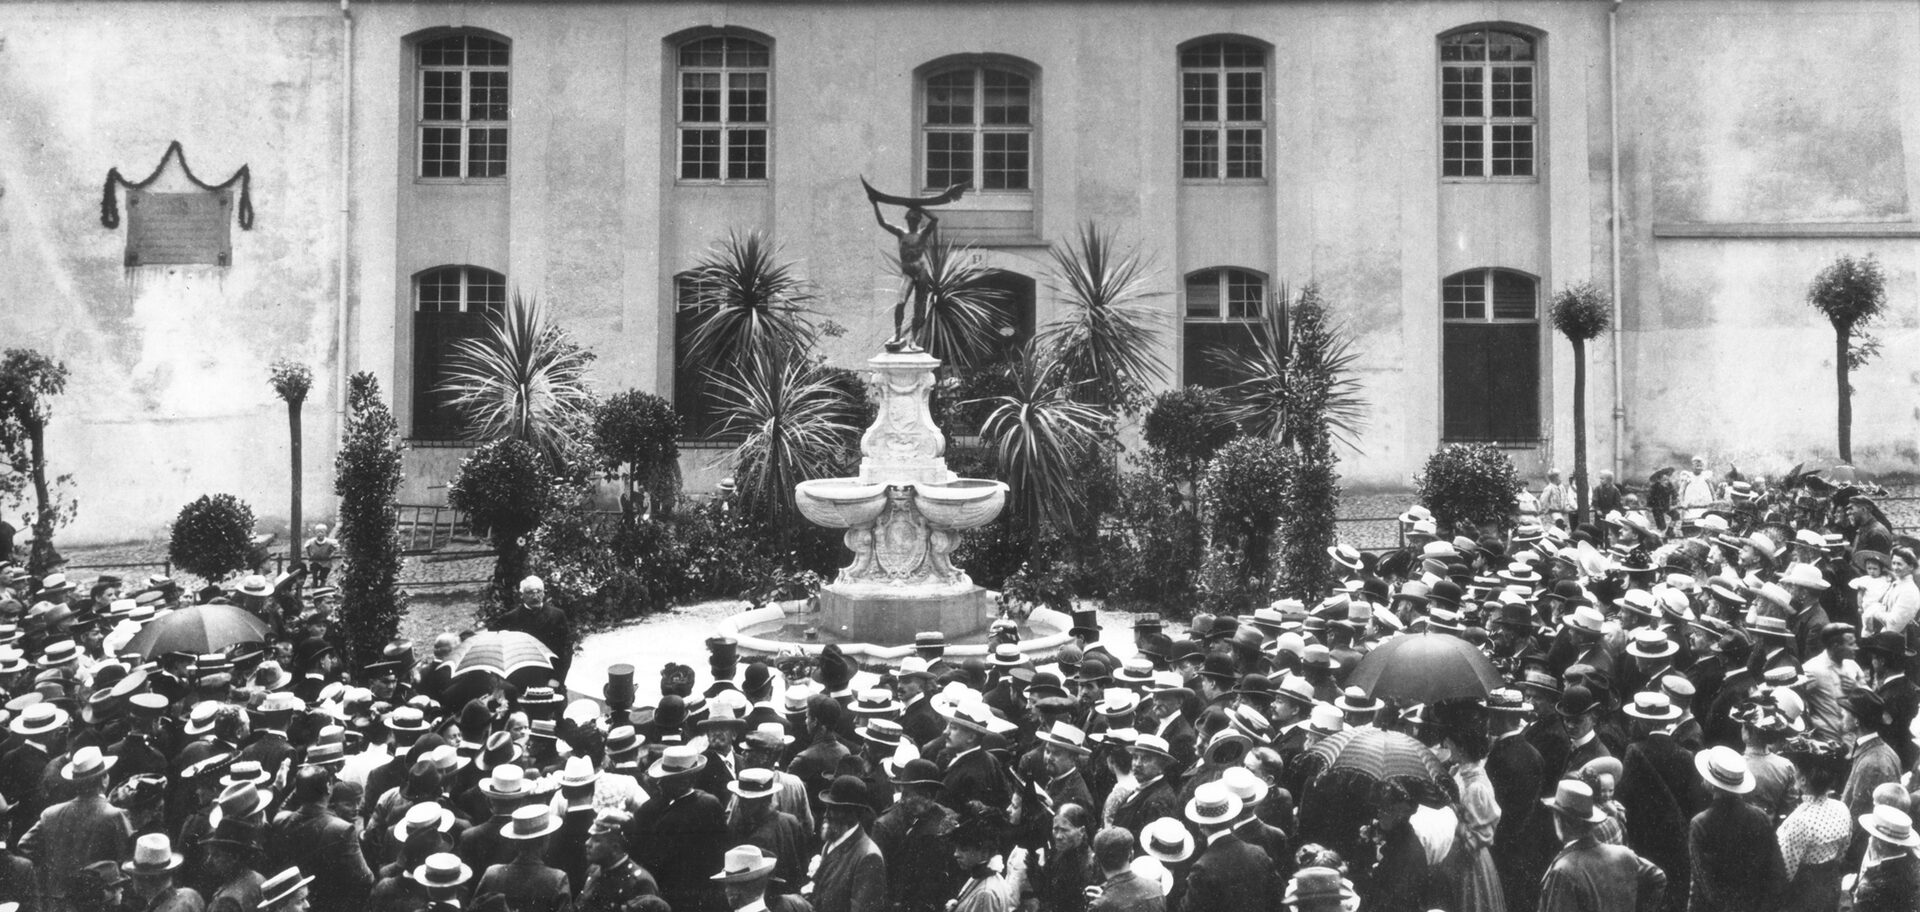 Historisches Foto von der Einweihung des Papinbrunnens mit vielen Menschen, die Hüte tragen.